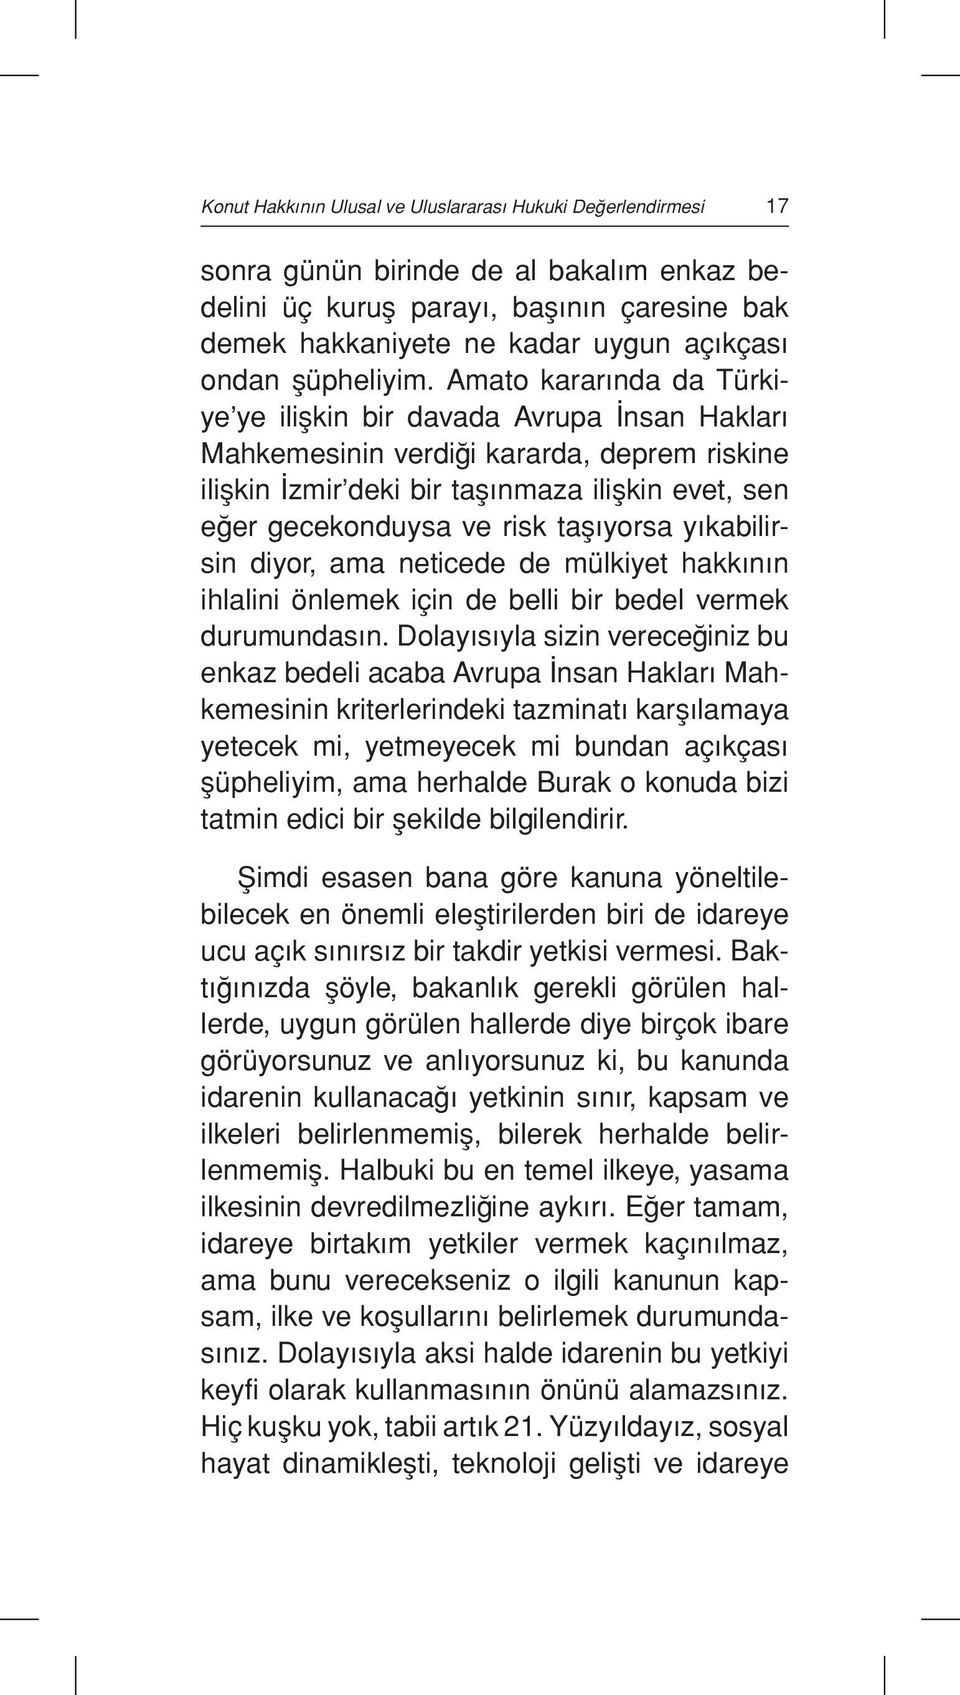 Amato kararında da Türkiye ye ilişkin bir davada Avrupa İnsan Hakları Mahkemesinin verdiği kararda, deprem riskine ilişkin İzmir deki bir taşınmaza ilişkin evet, sen eğer gecekonduysa ve risk